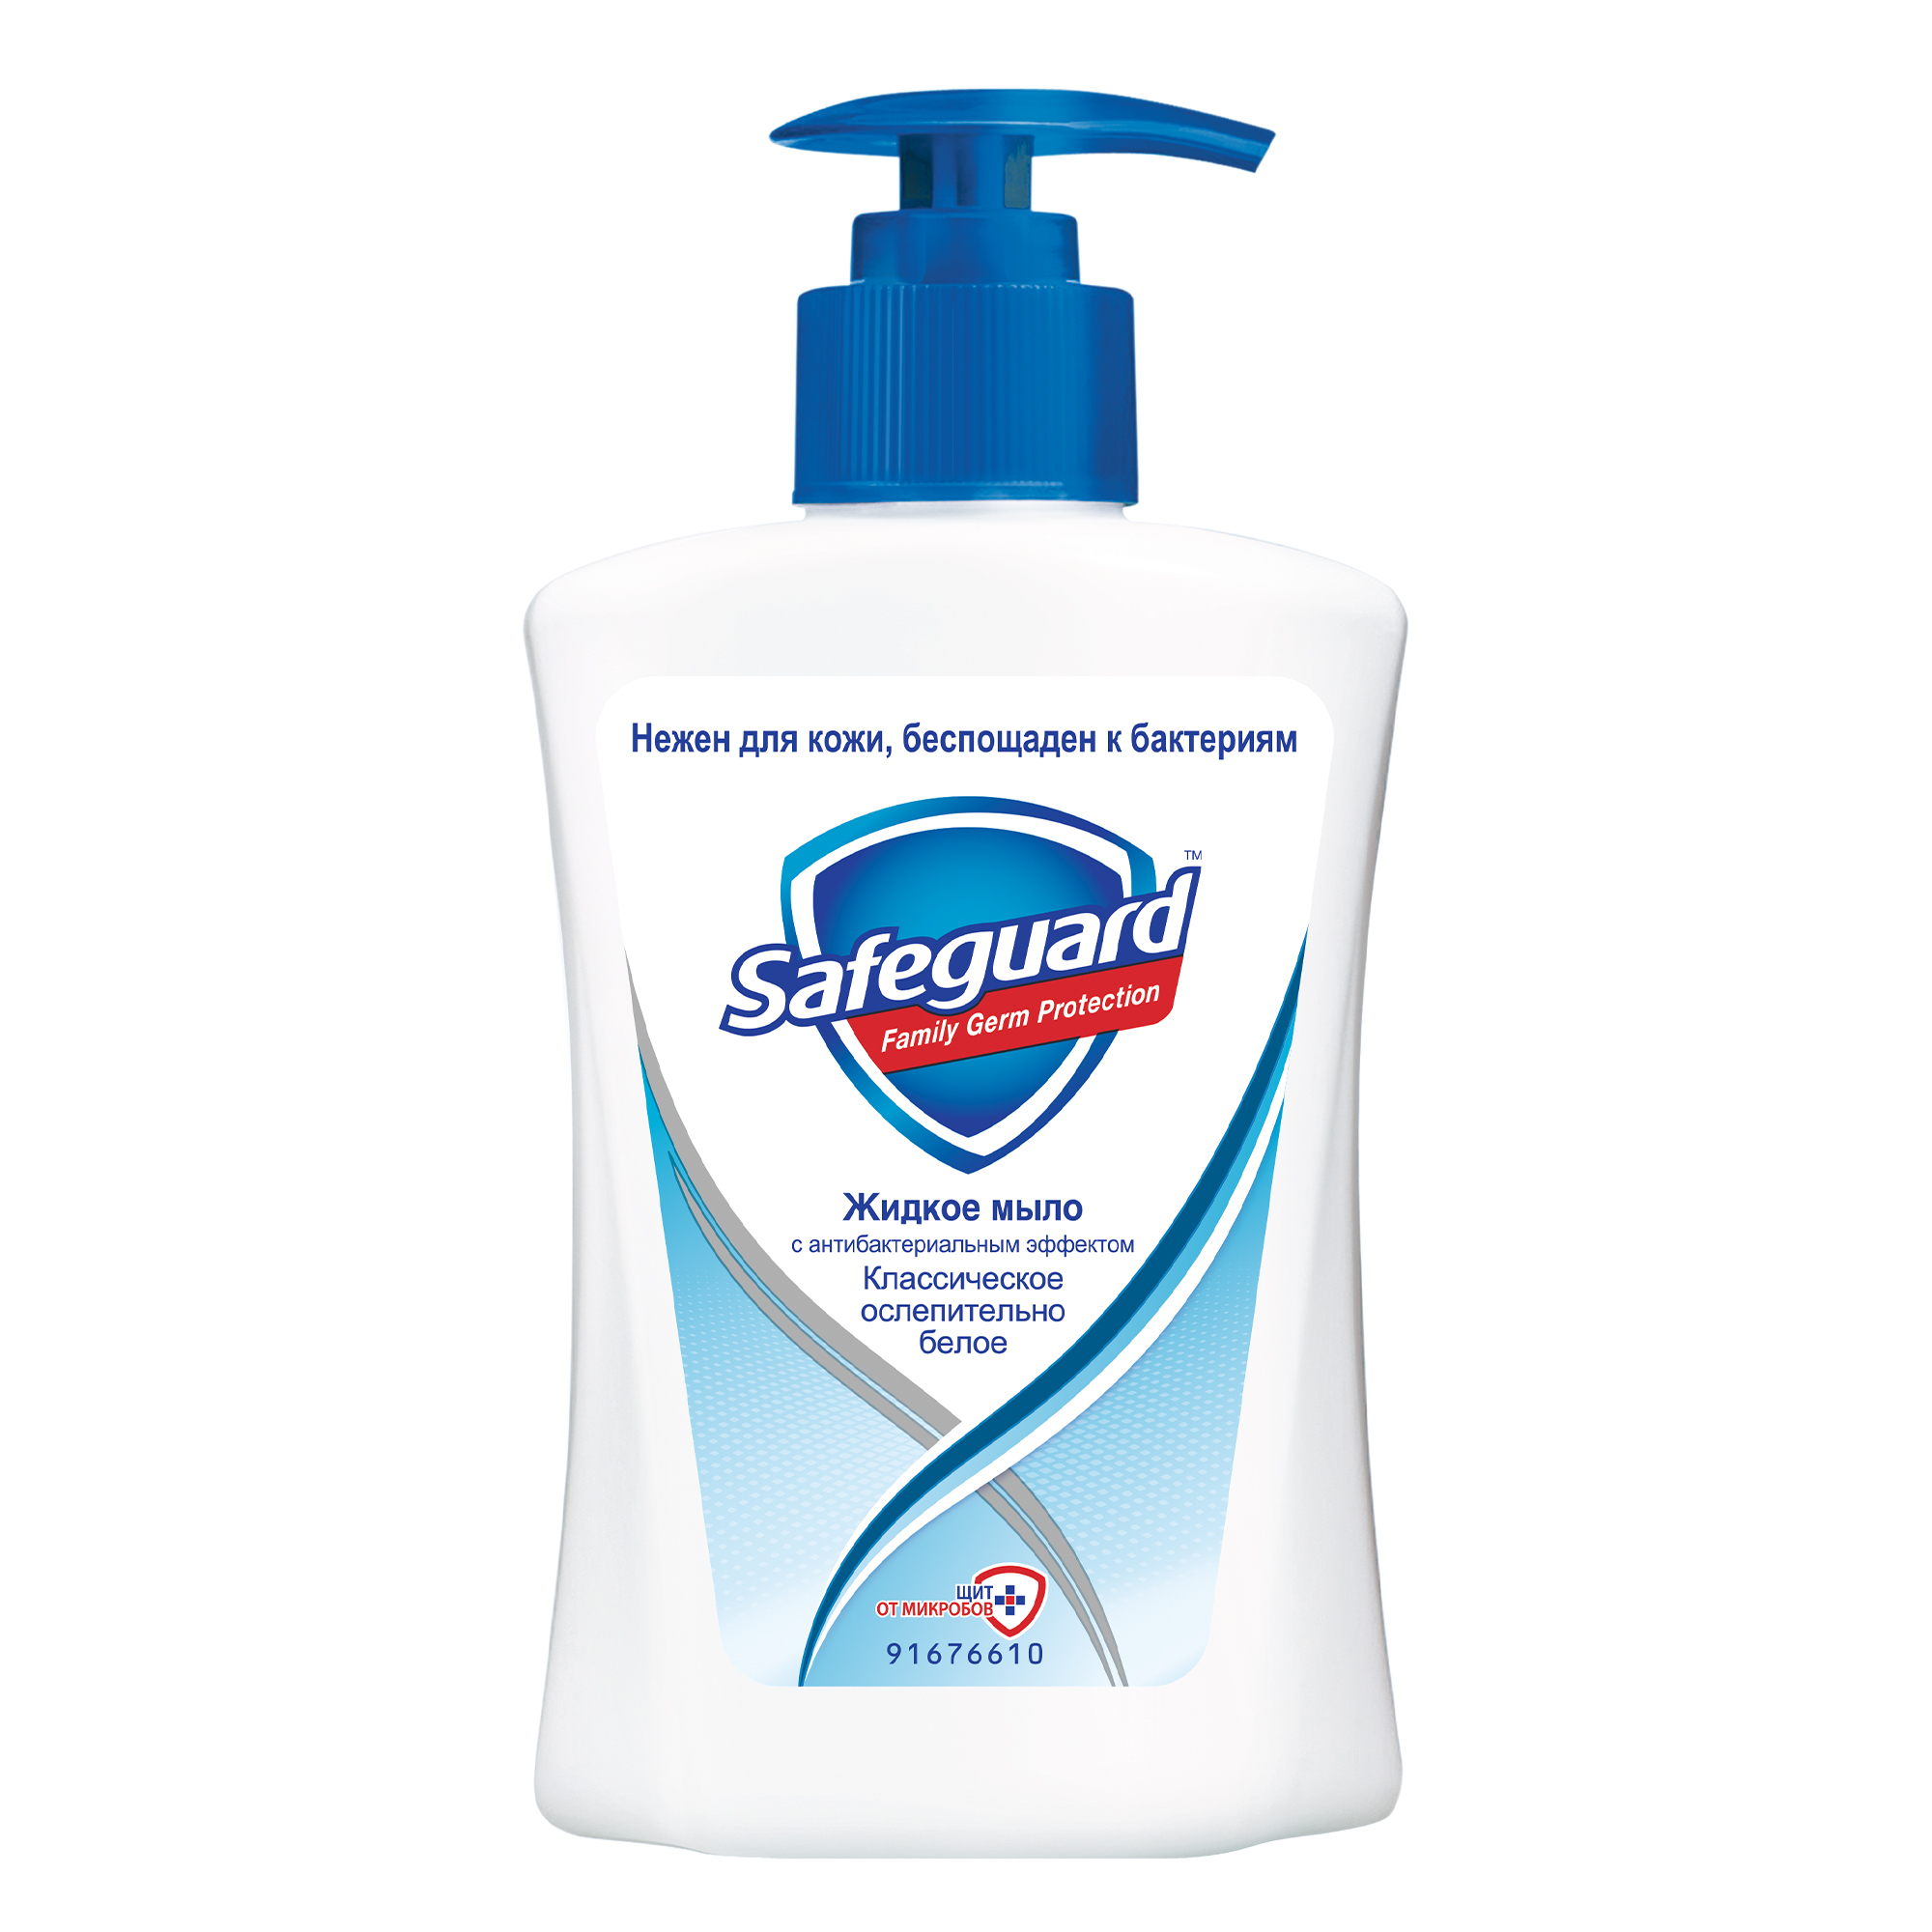 Жидкое мыло Safeguard классическое ослепительно белое с антибактериальным эффектом, 225 мл - фото 1